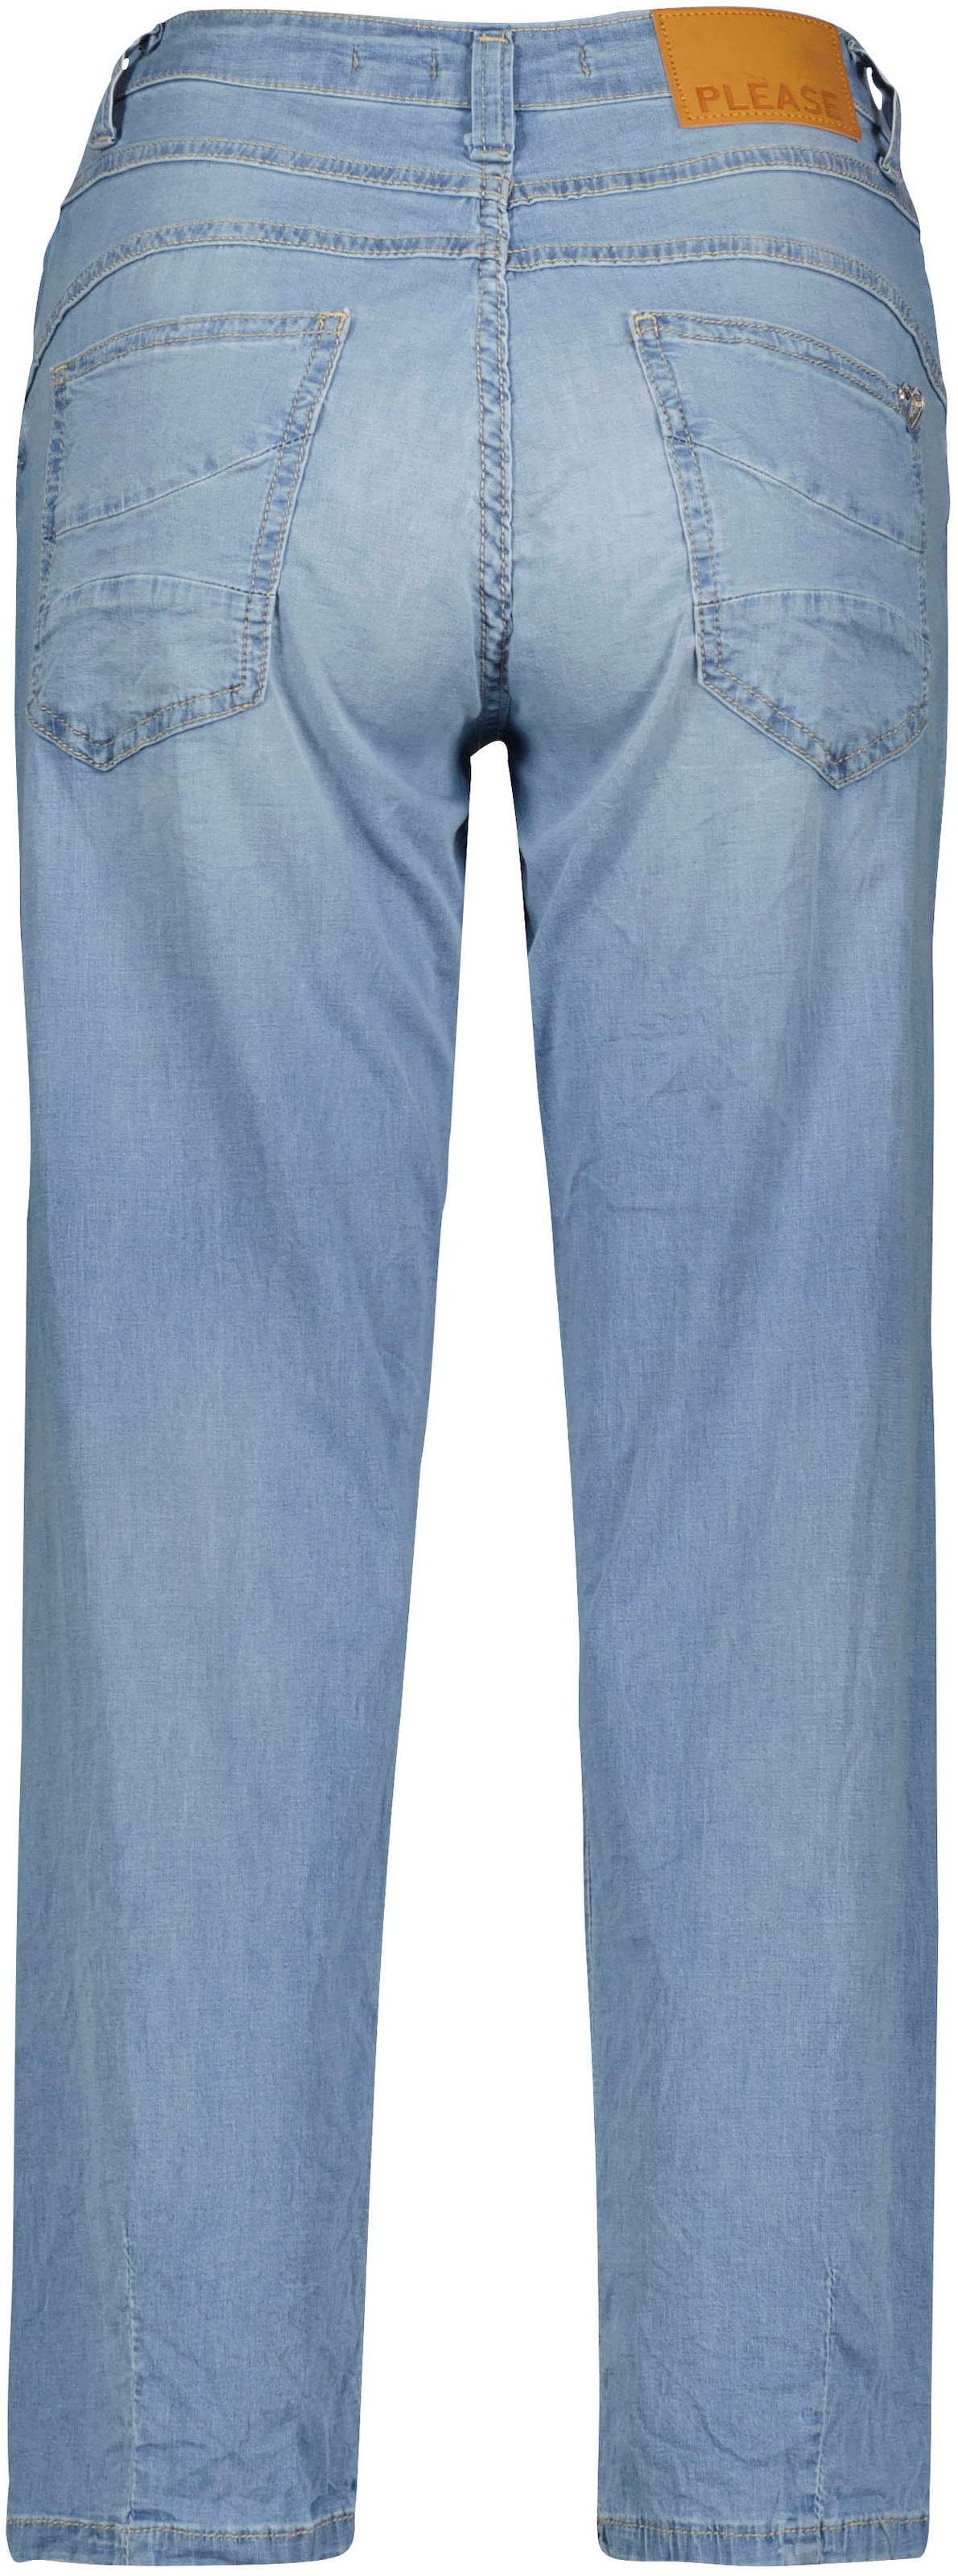 Please Jeans Boyfriend-Hose, in leichter Chambray Denim Qualität